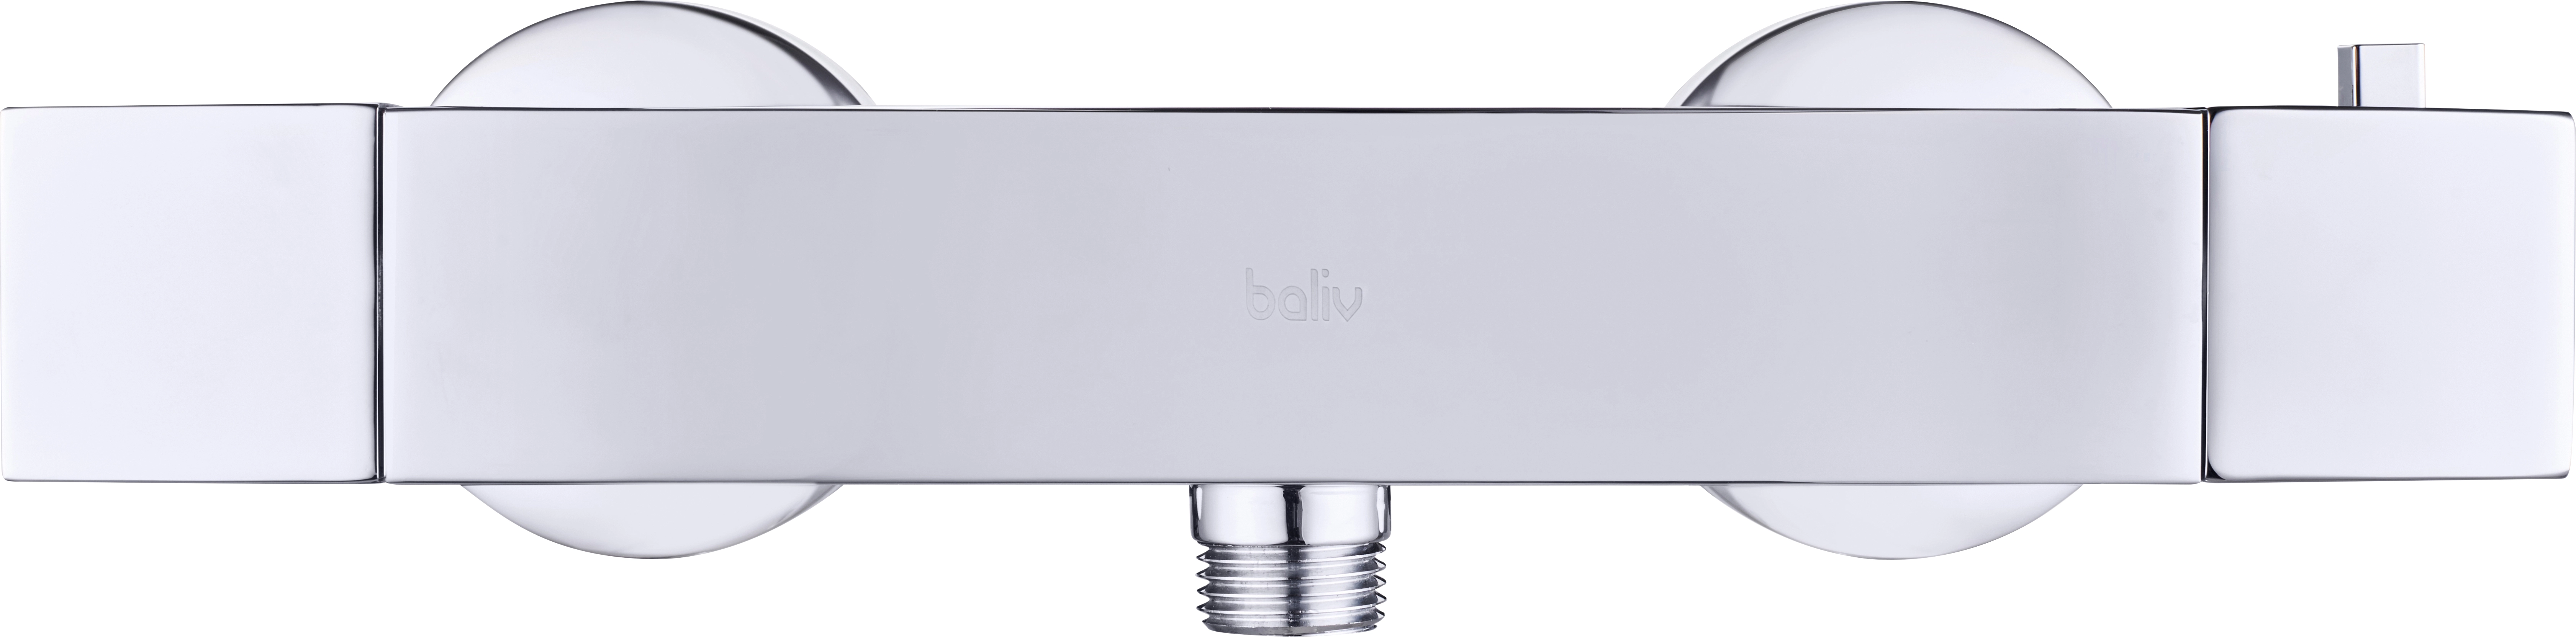 baliv Thermostat-Duscharmatur DU-2060 Chrom kaufen bei OBI